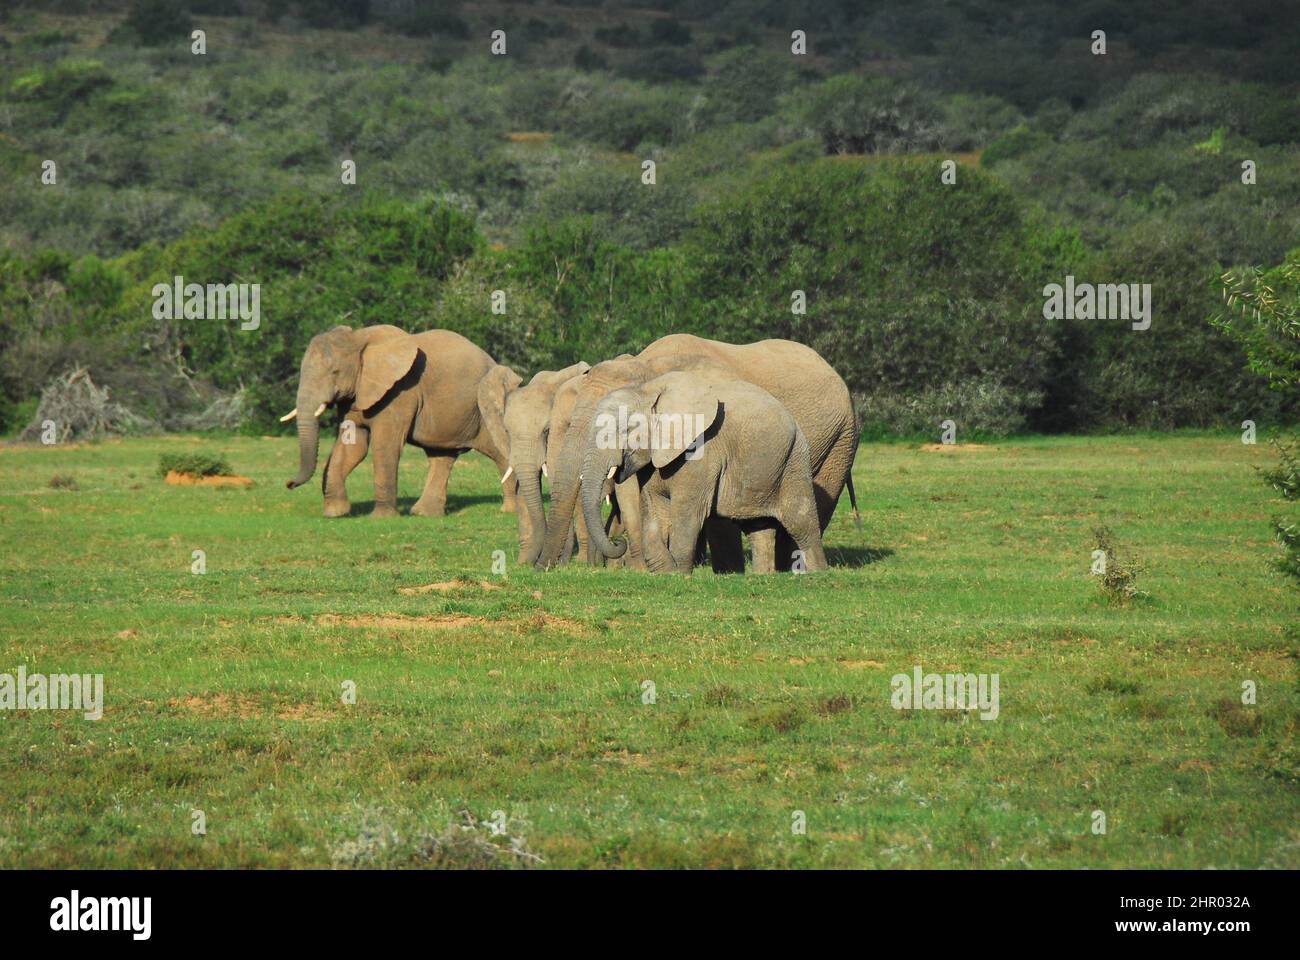 Eine Familie von fünf Elefanten jeden Alters, die durch ein grasbedecktes Tal in den waldbedeckten Hügeln Südafrikas wandern. Aufgenommen auf Safari. Stockfoto